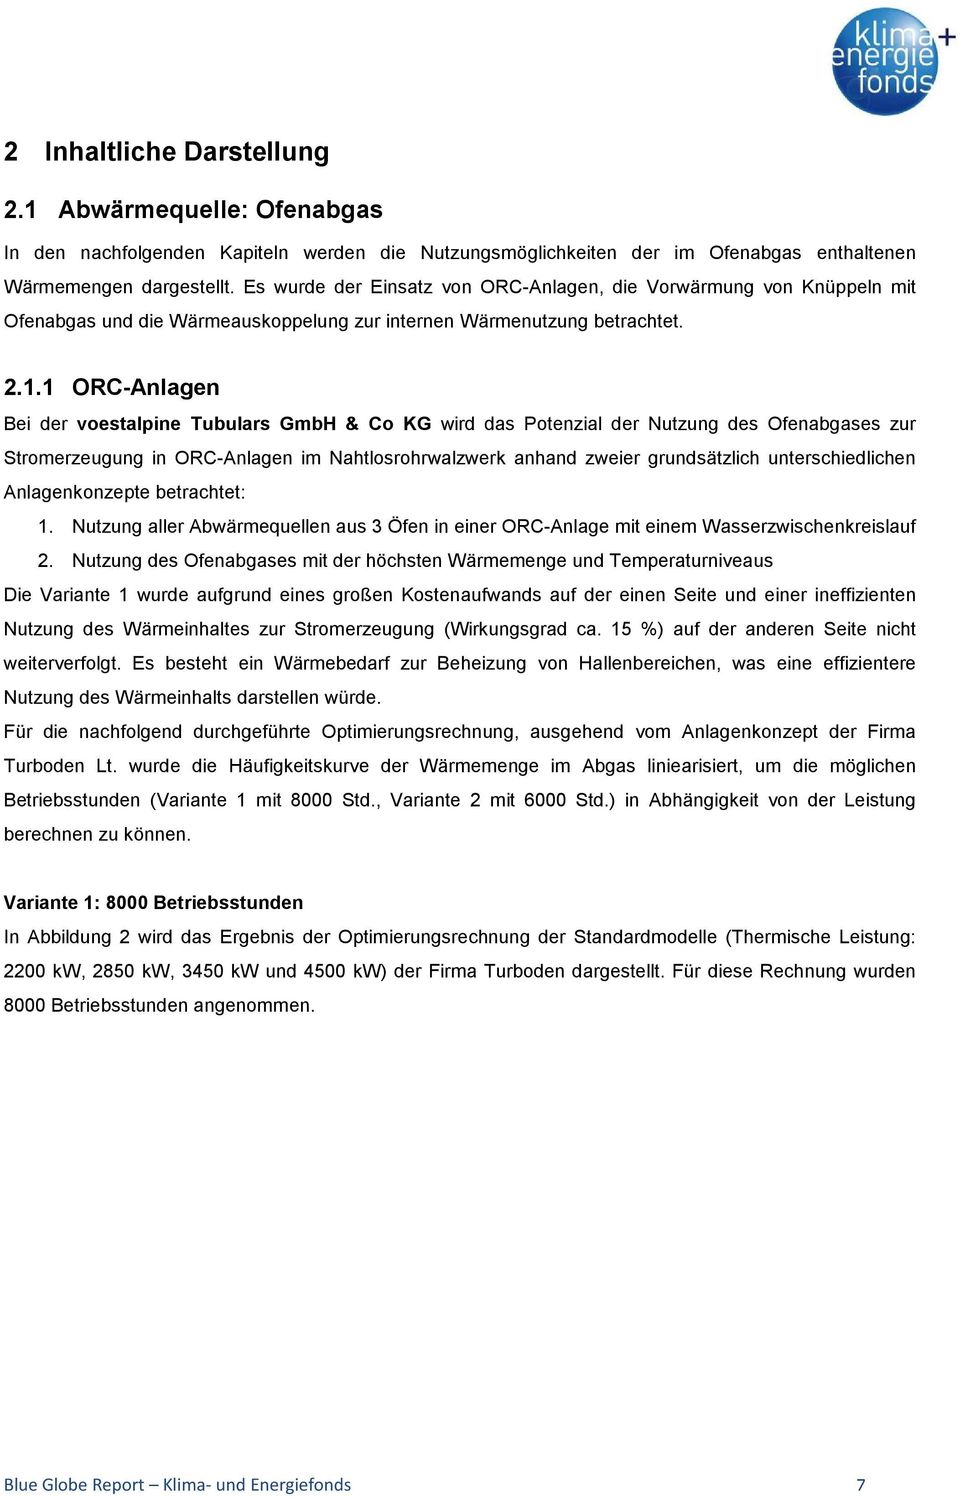 1 ORC-Anlagen Bei der voestalpine Tubulars GmbH & Co KG wird das Potenzial der Nutzung des Ofenabgases zur Stromerzeugung in ORC-Anlagen im Nahtlosrohrwalzwerk anhand zweier grundsätzlich